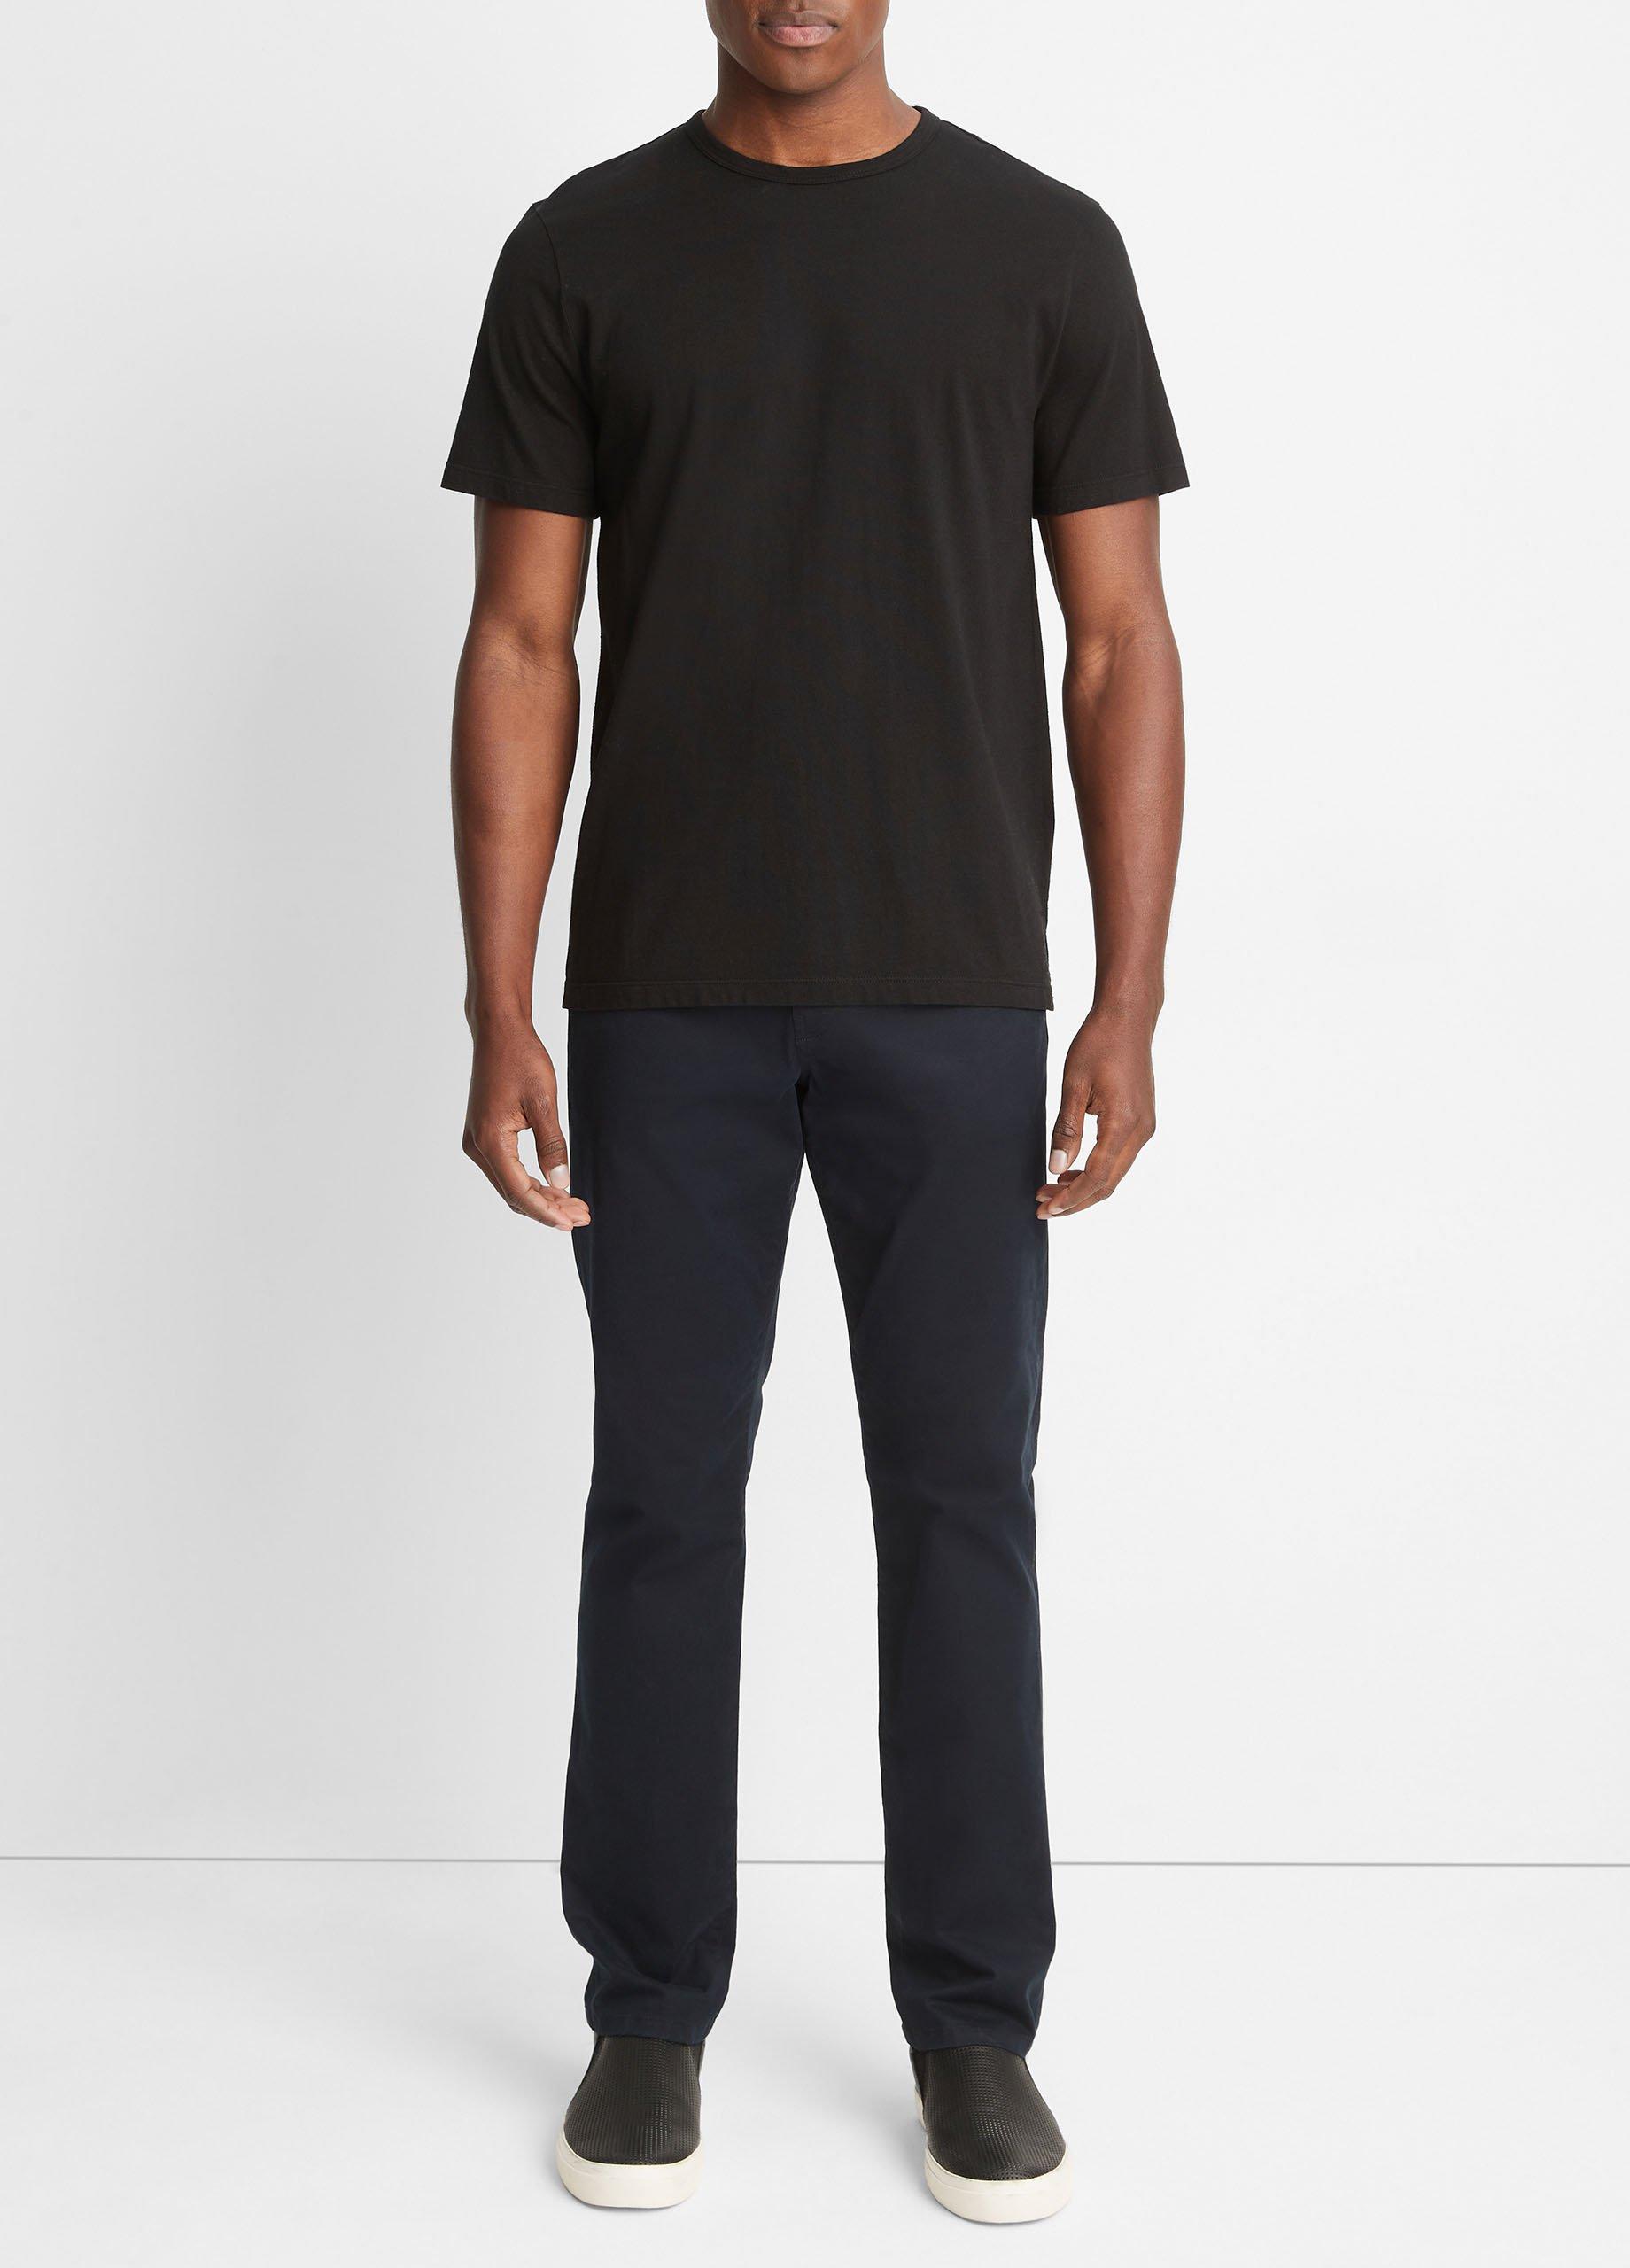 빈스 Vince Garment Dye Short-Sleeve Crew Neck T-Shirt,TRUE BLACK